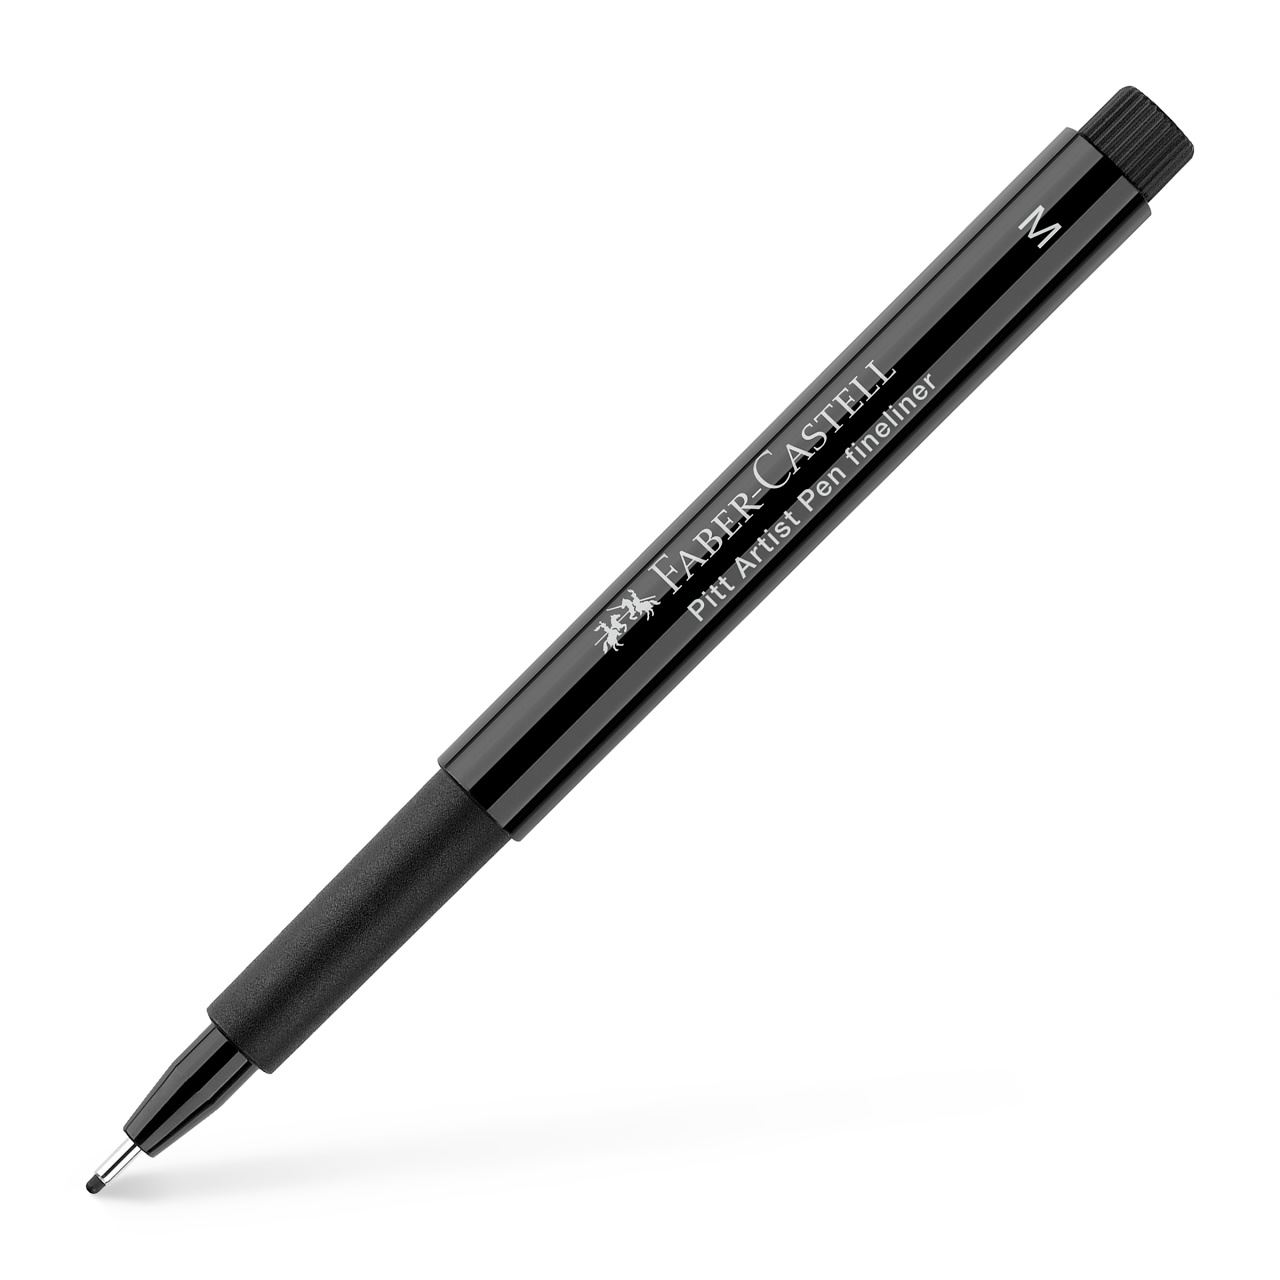 Faber-Castell - PITTアーティストペン ブラック M 199